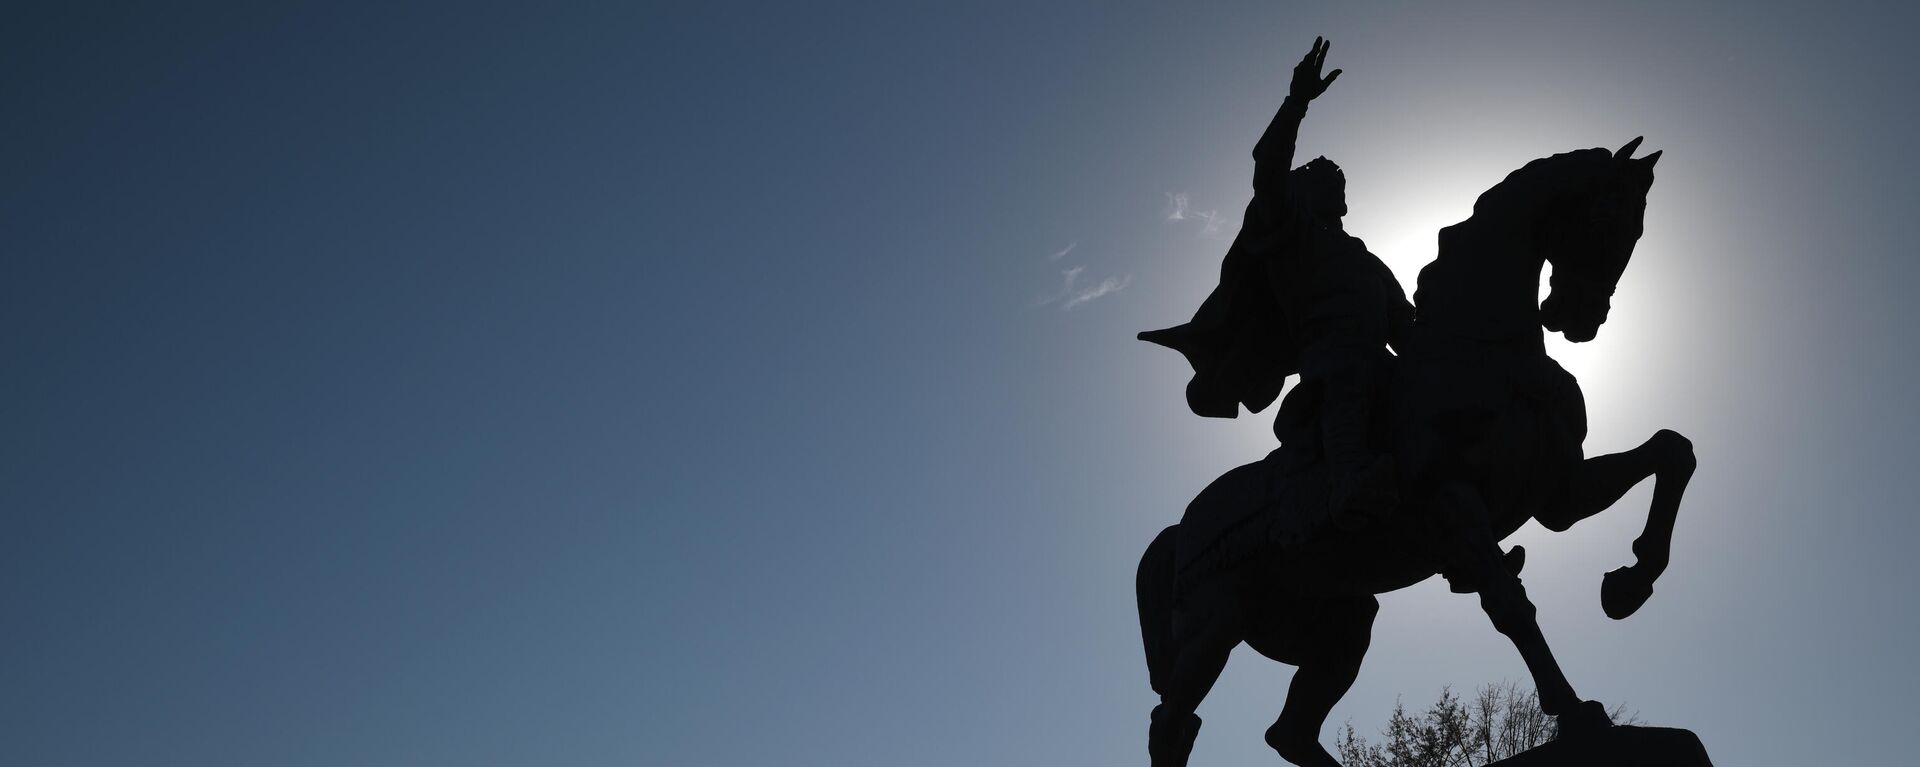 Памятник Амиру Темуру в Ташкенте. - Sputnik Ўзбекистон, 1920, 10.08.2021